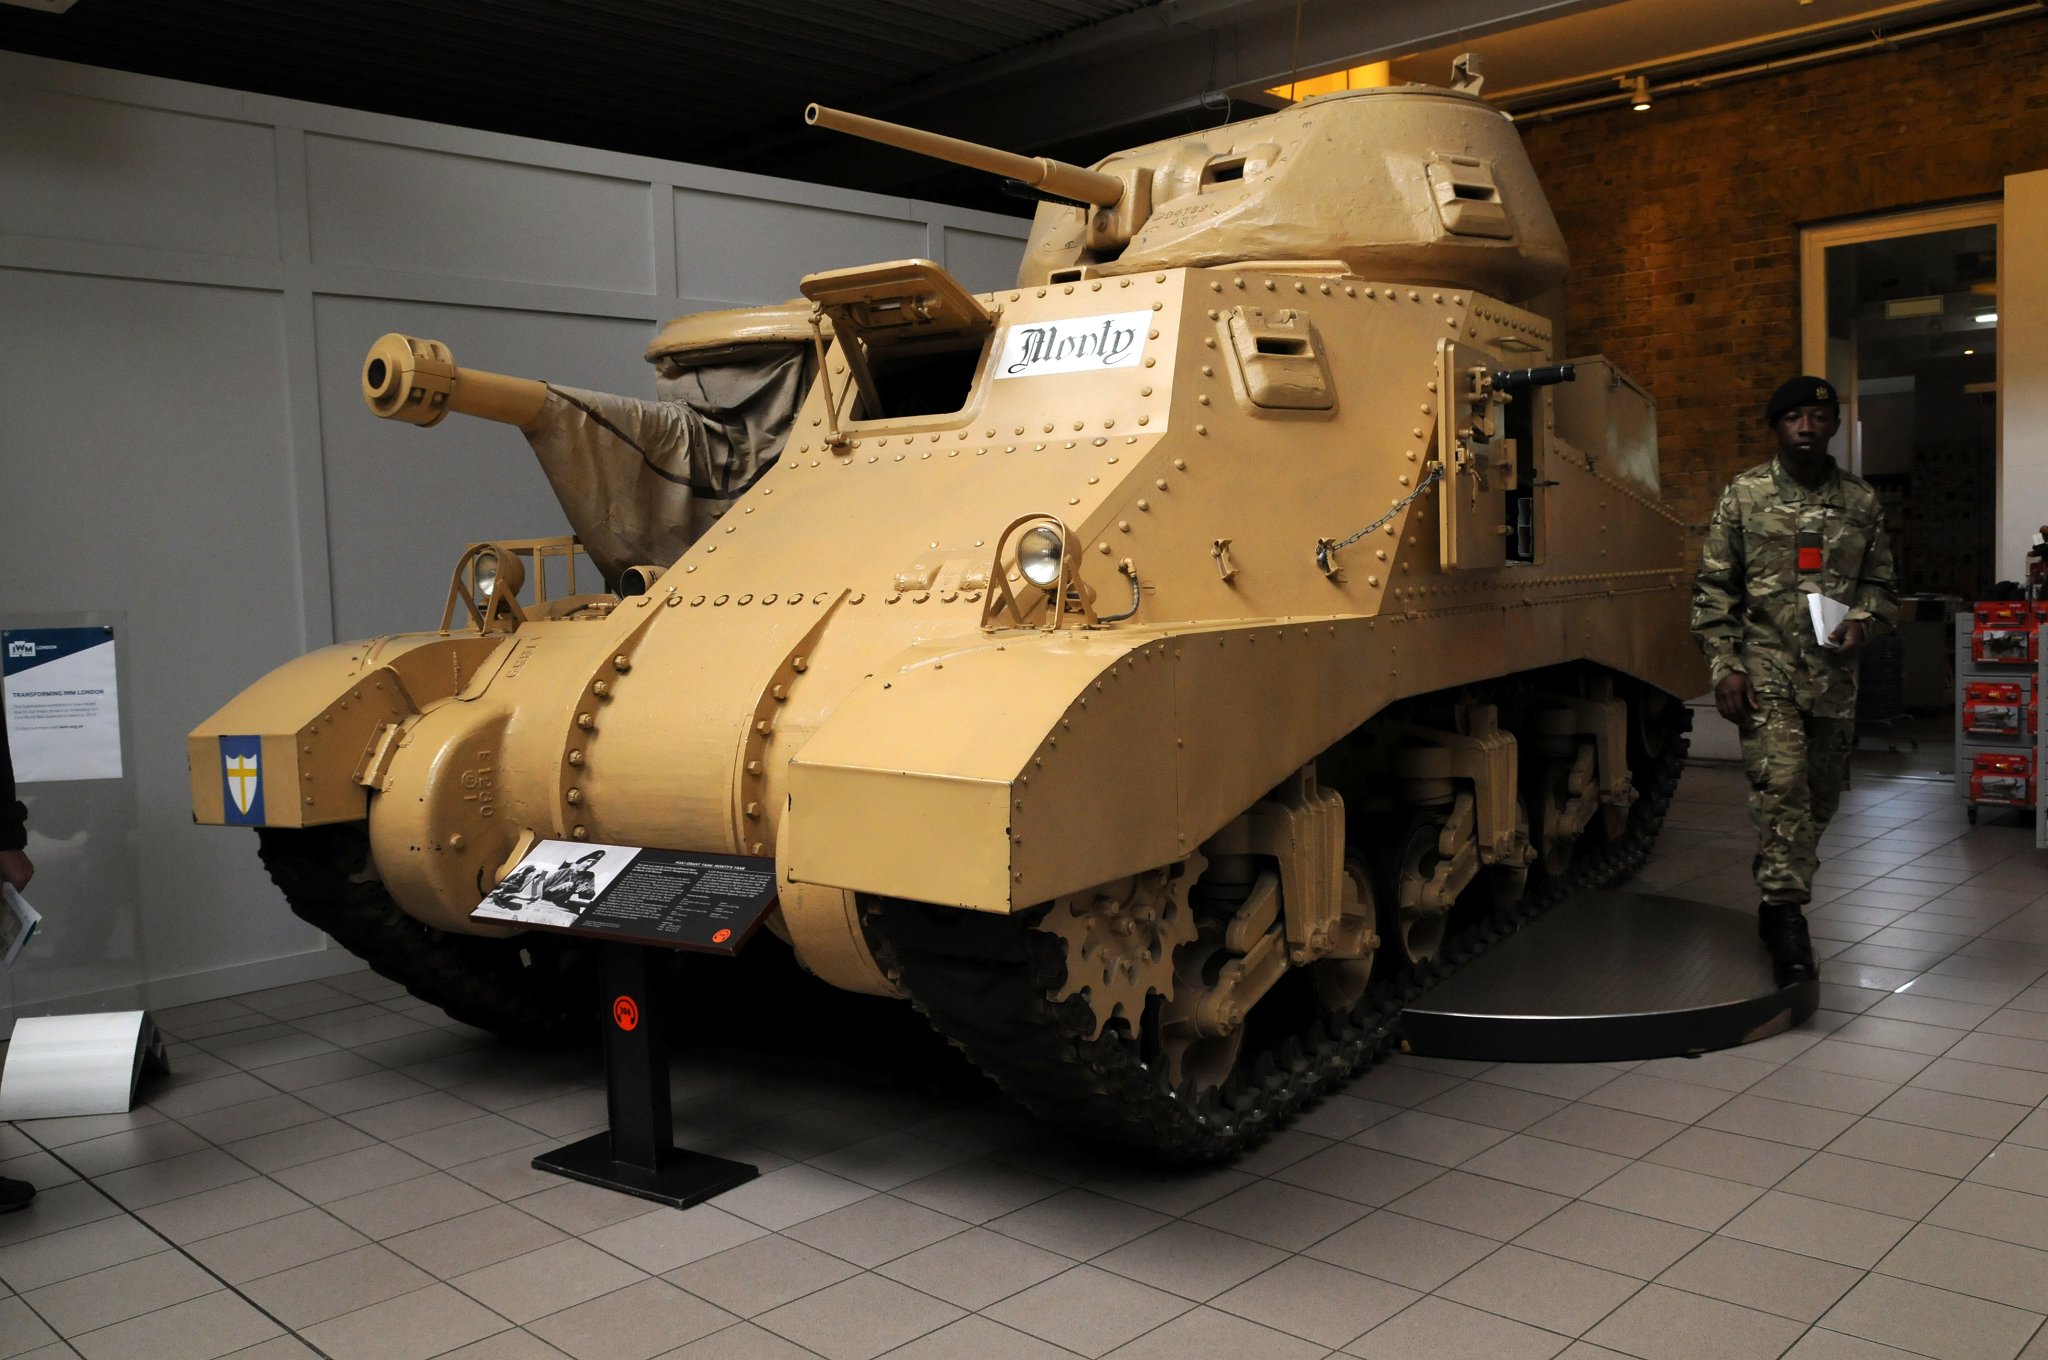 DSC_6905_2.jpg - M3A3 tank Monty. Tato britská verze amerického tanku byla použita v severoafrické poušti 1941 a bojovala u El Alameinu. Původně byl vyzbrojen 75mm zbraní v trupu a 37mm kanóne ve věži, který jí poskytl šanci proti německému Panzer III. Tento konkrétní model byl ve skutečnosti použit polním maršálem Montgomerym jako jeho velitelské vozidlo a 37 mm zbraň je ve skutečnosti dřevěná atrapa, aby měl maršál ve věži více prostoru pro mapy a rozhlasové zařízení. Maximální rychlost 29 km/hod., váha 28,577 kg, dvojitý naftový motor, dojezd 275km.